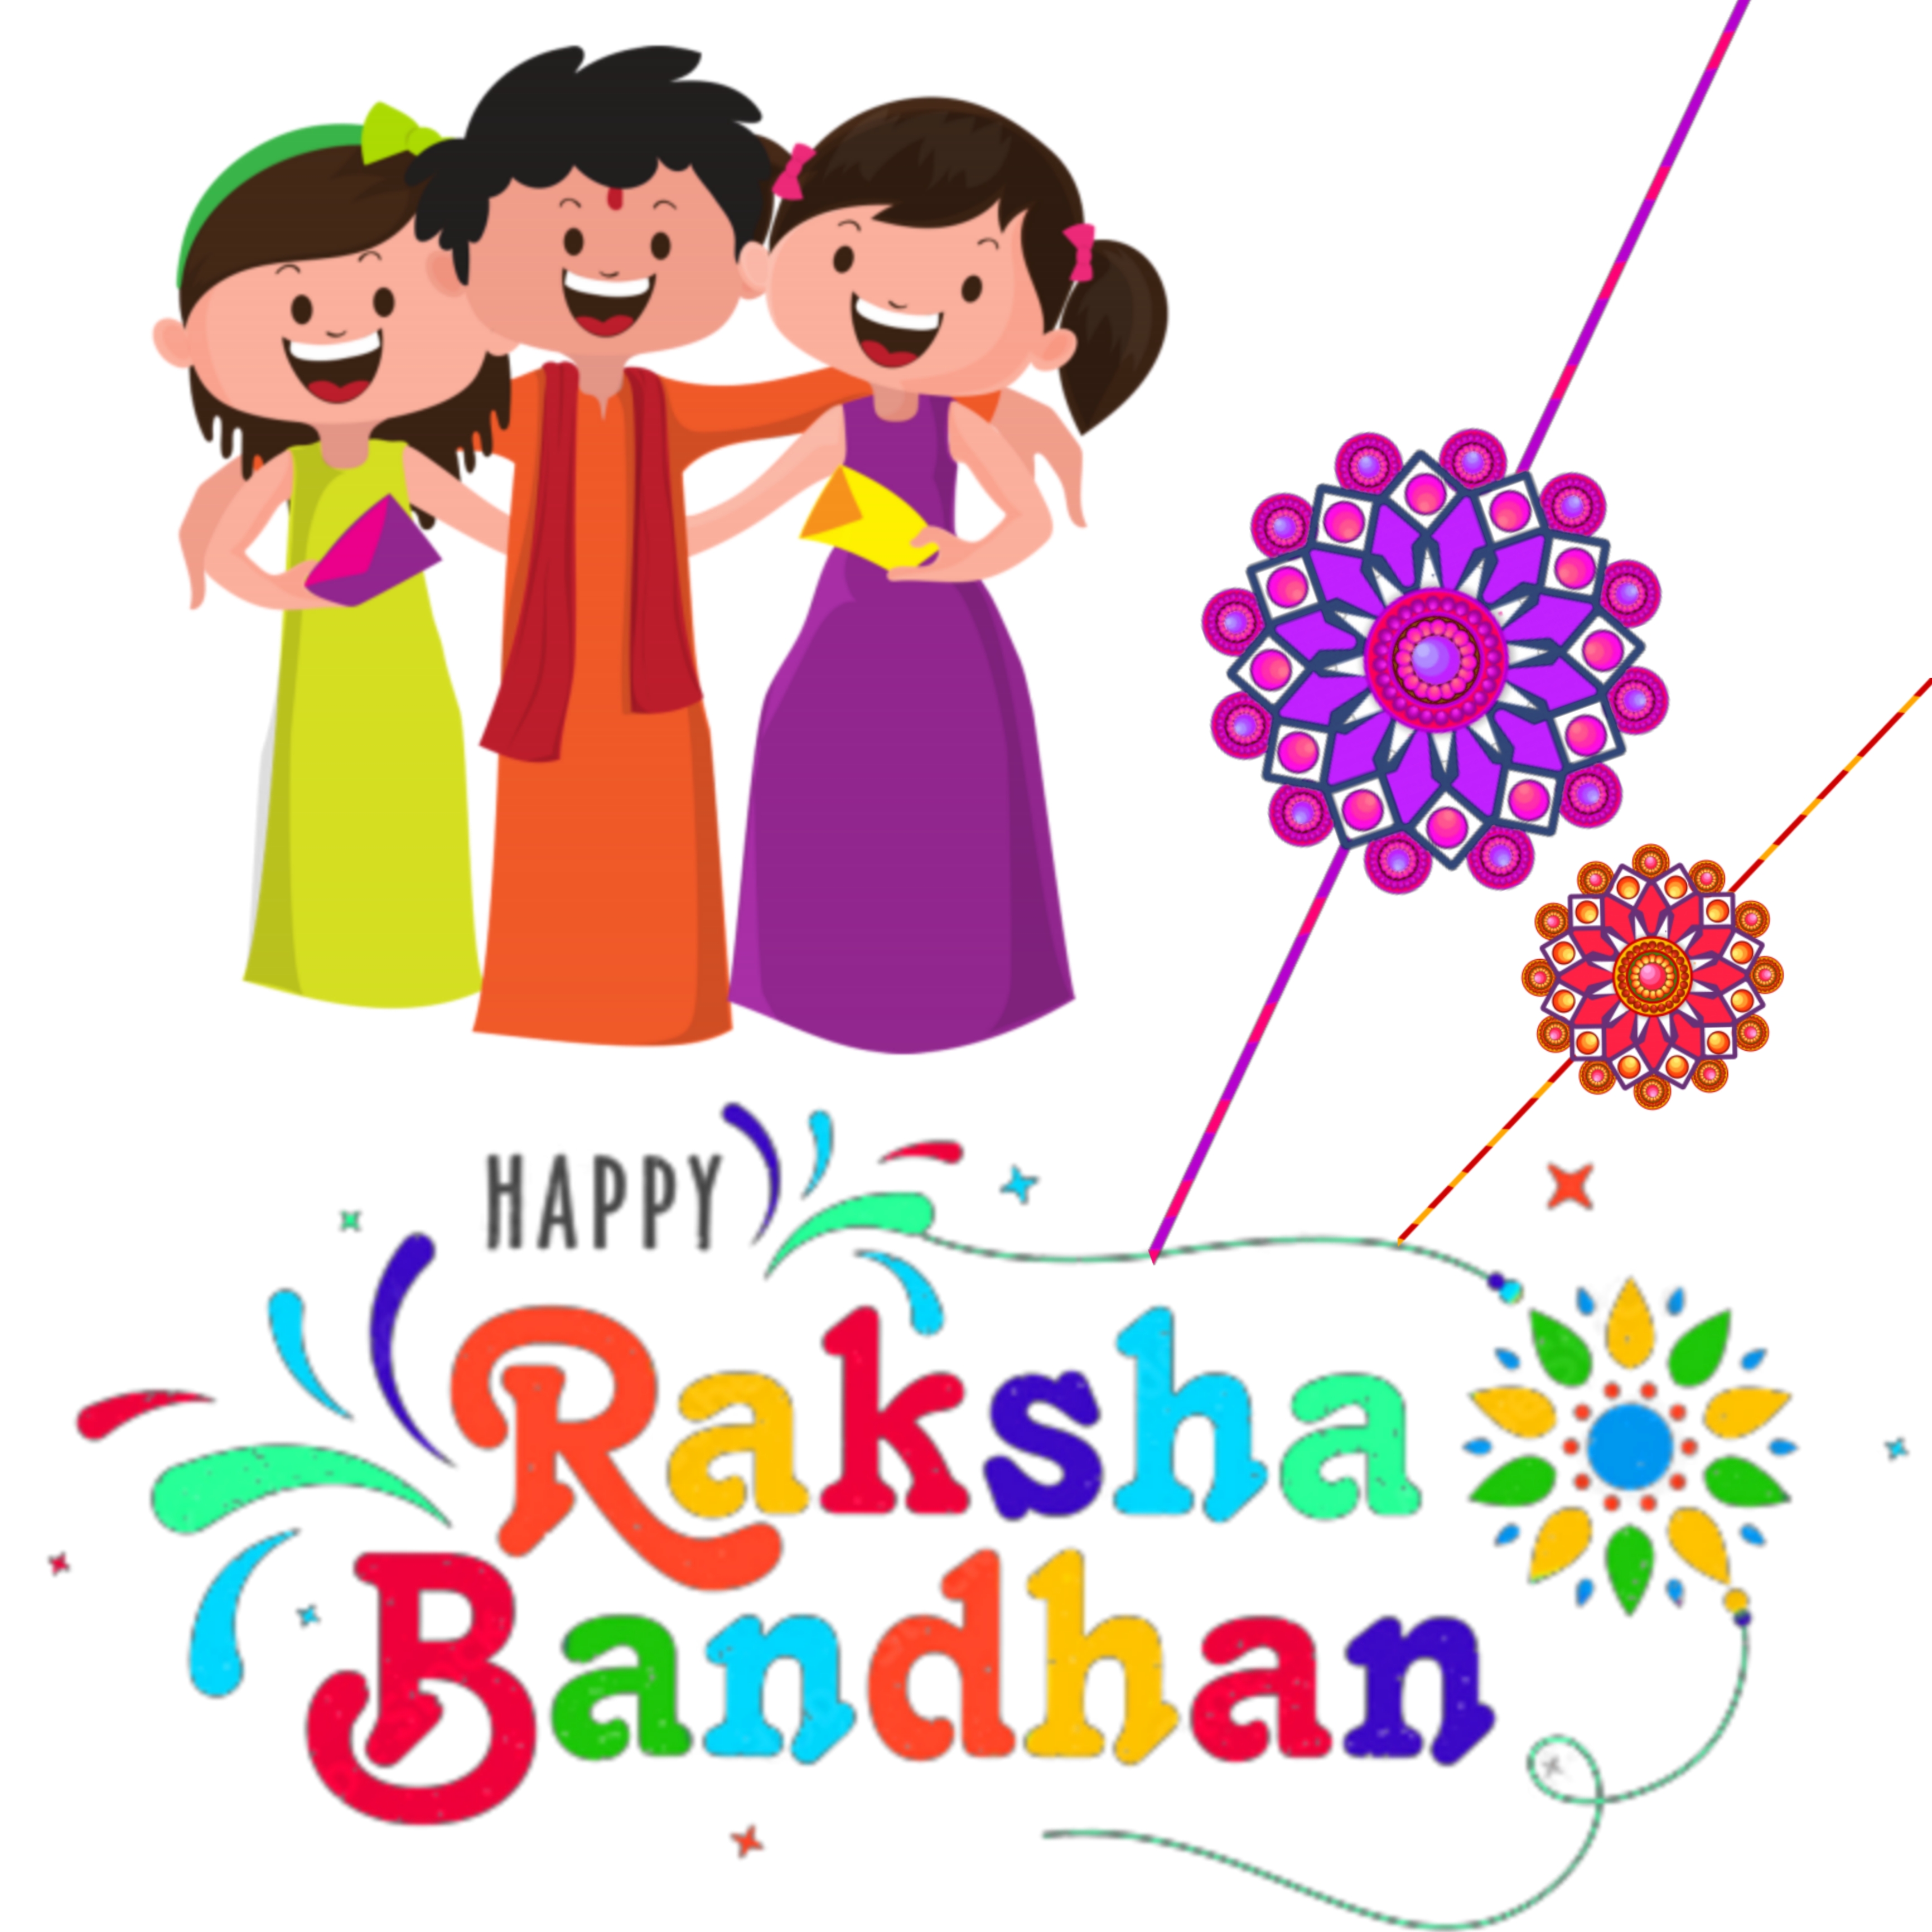 Happy Raksha Bandhan wallpaper download | हैप्पी रक्षाबंधन फोटो